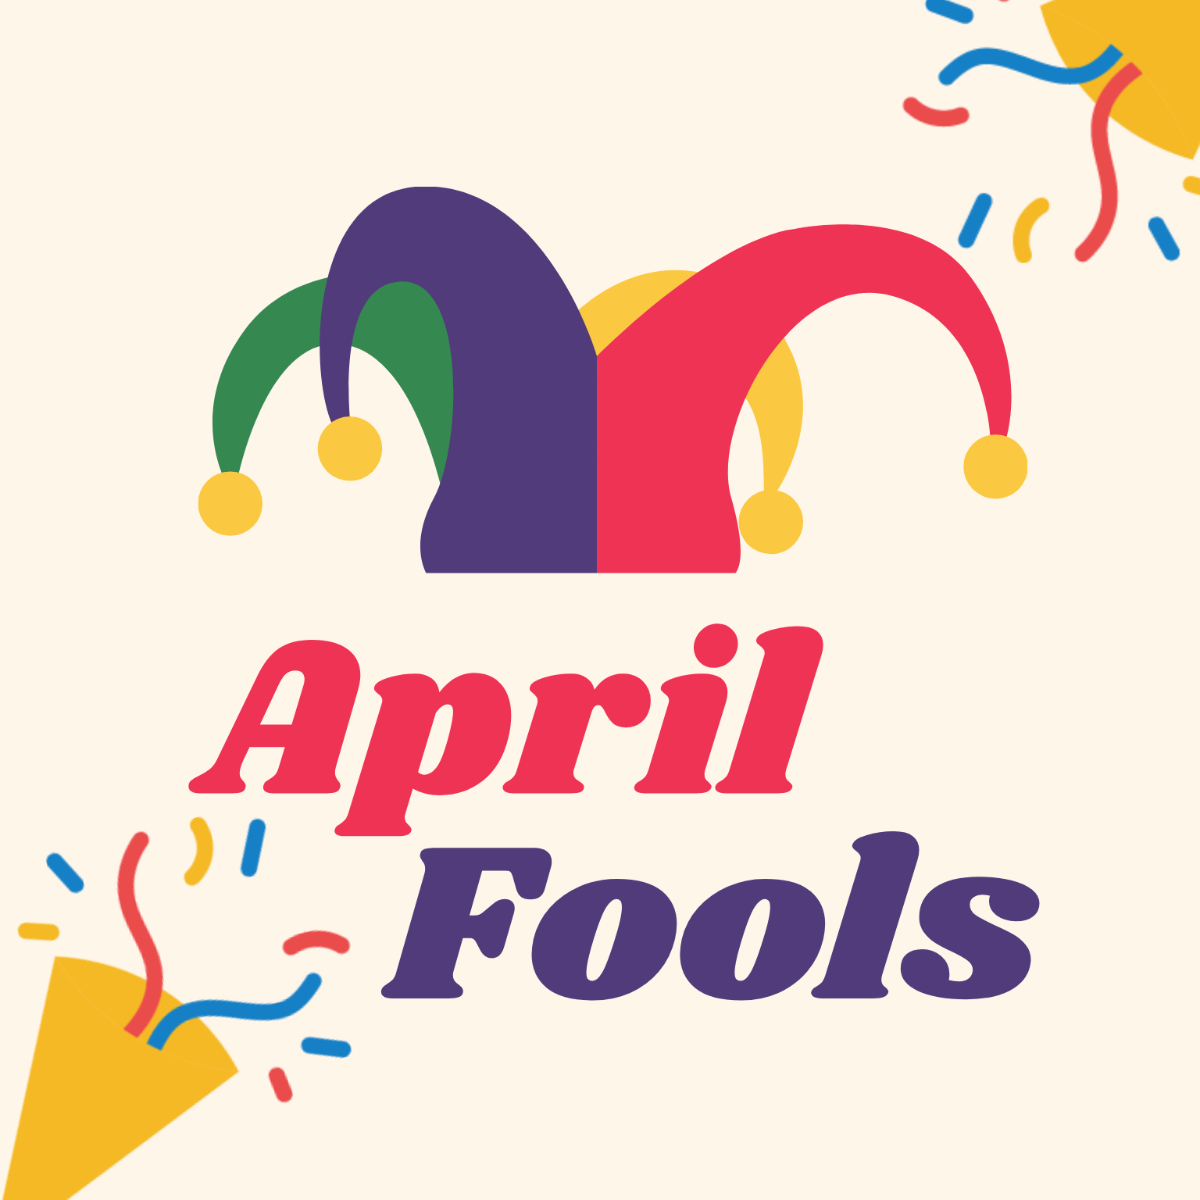 April Fools' Day Vector